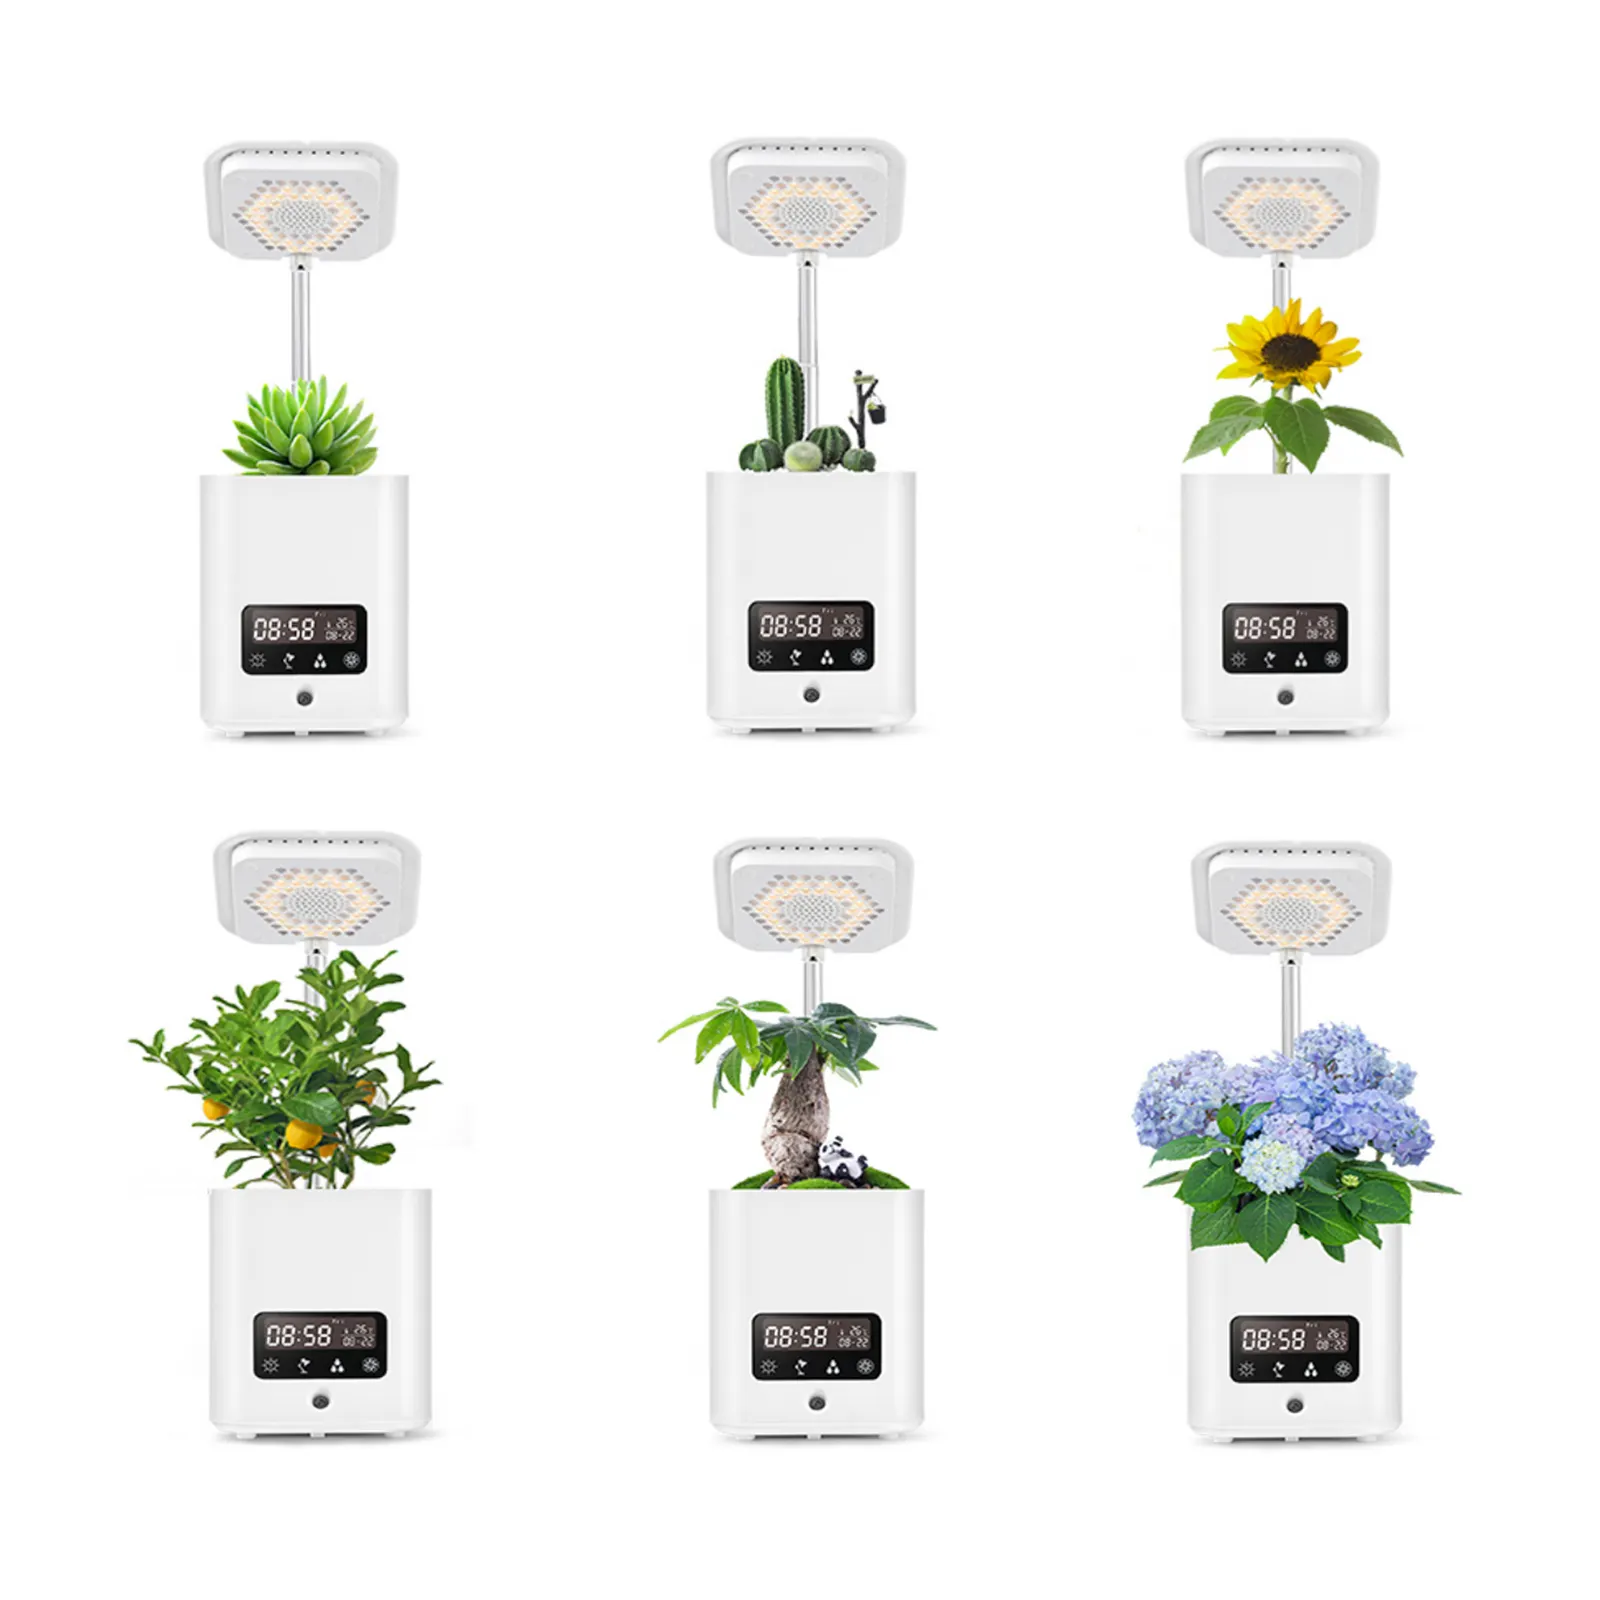 Familien farm Smart Mini Garden Indoor Grow Light Blumentöpfe & Pflanz gefäße mit Luftbe feuchter Luft reiniger Lautsprecher Wecker